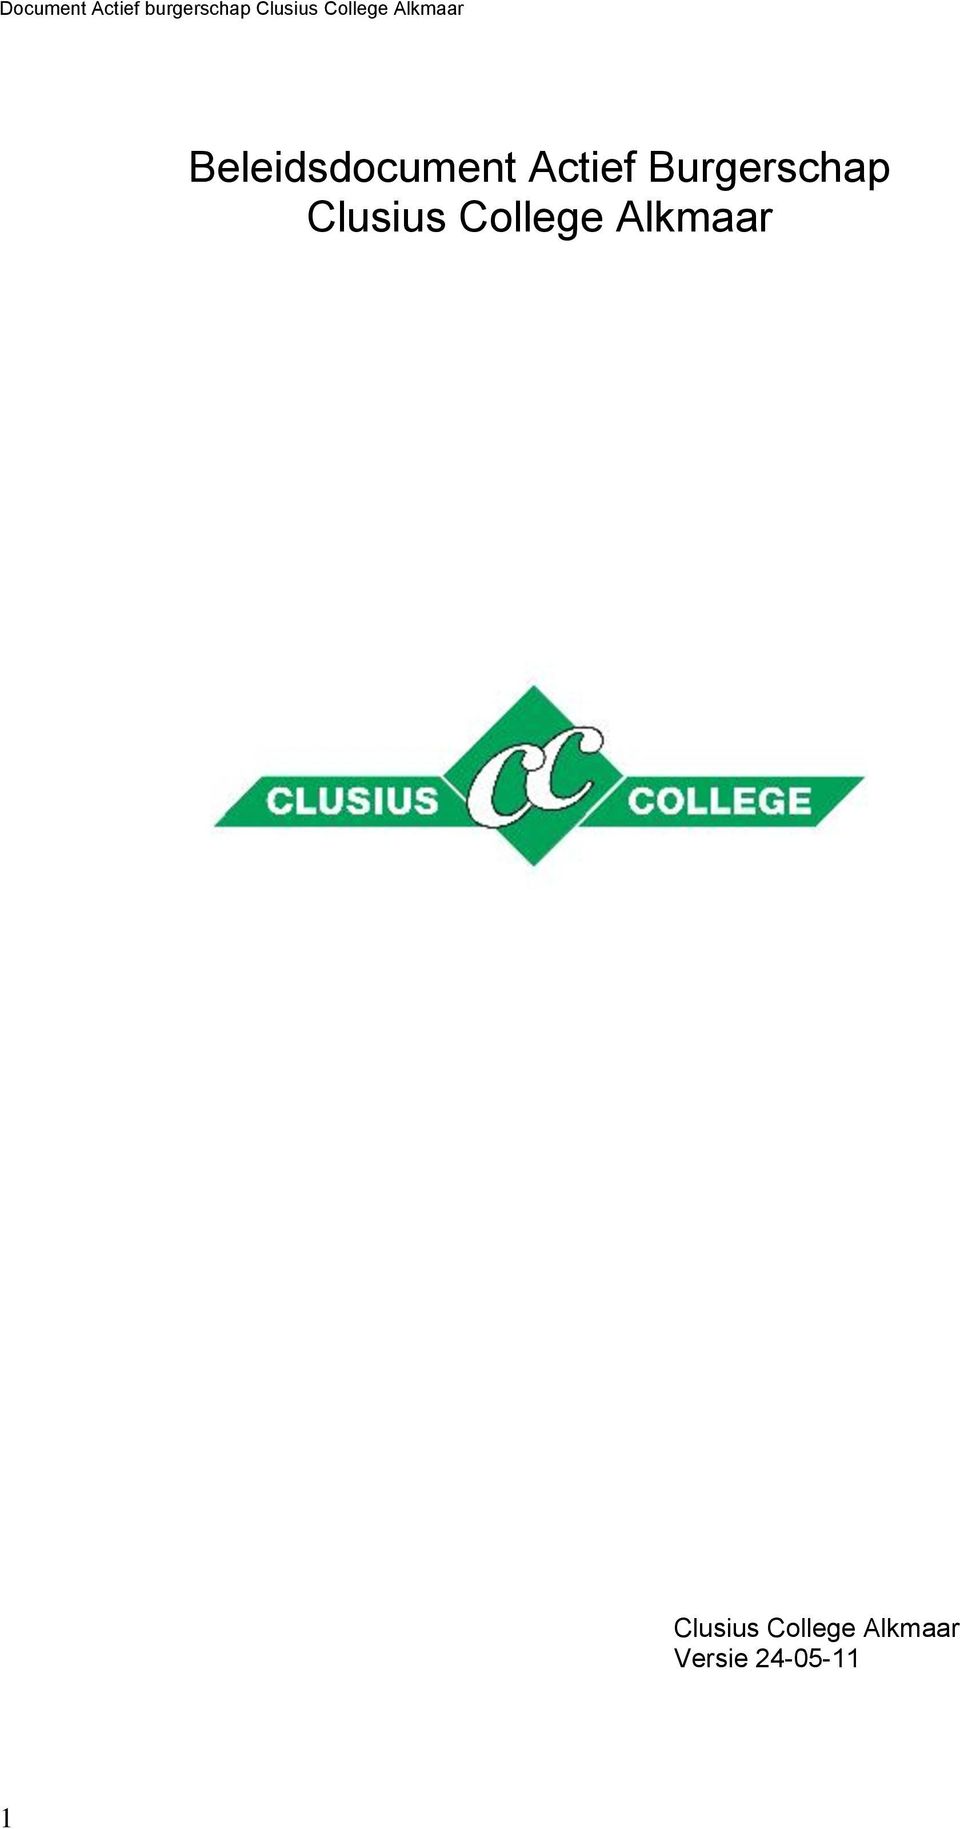 College Alkmaar Clusius